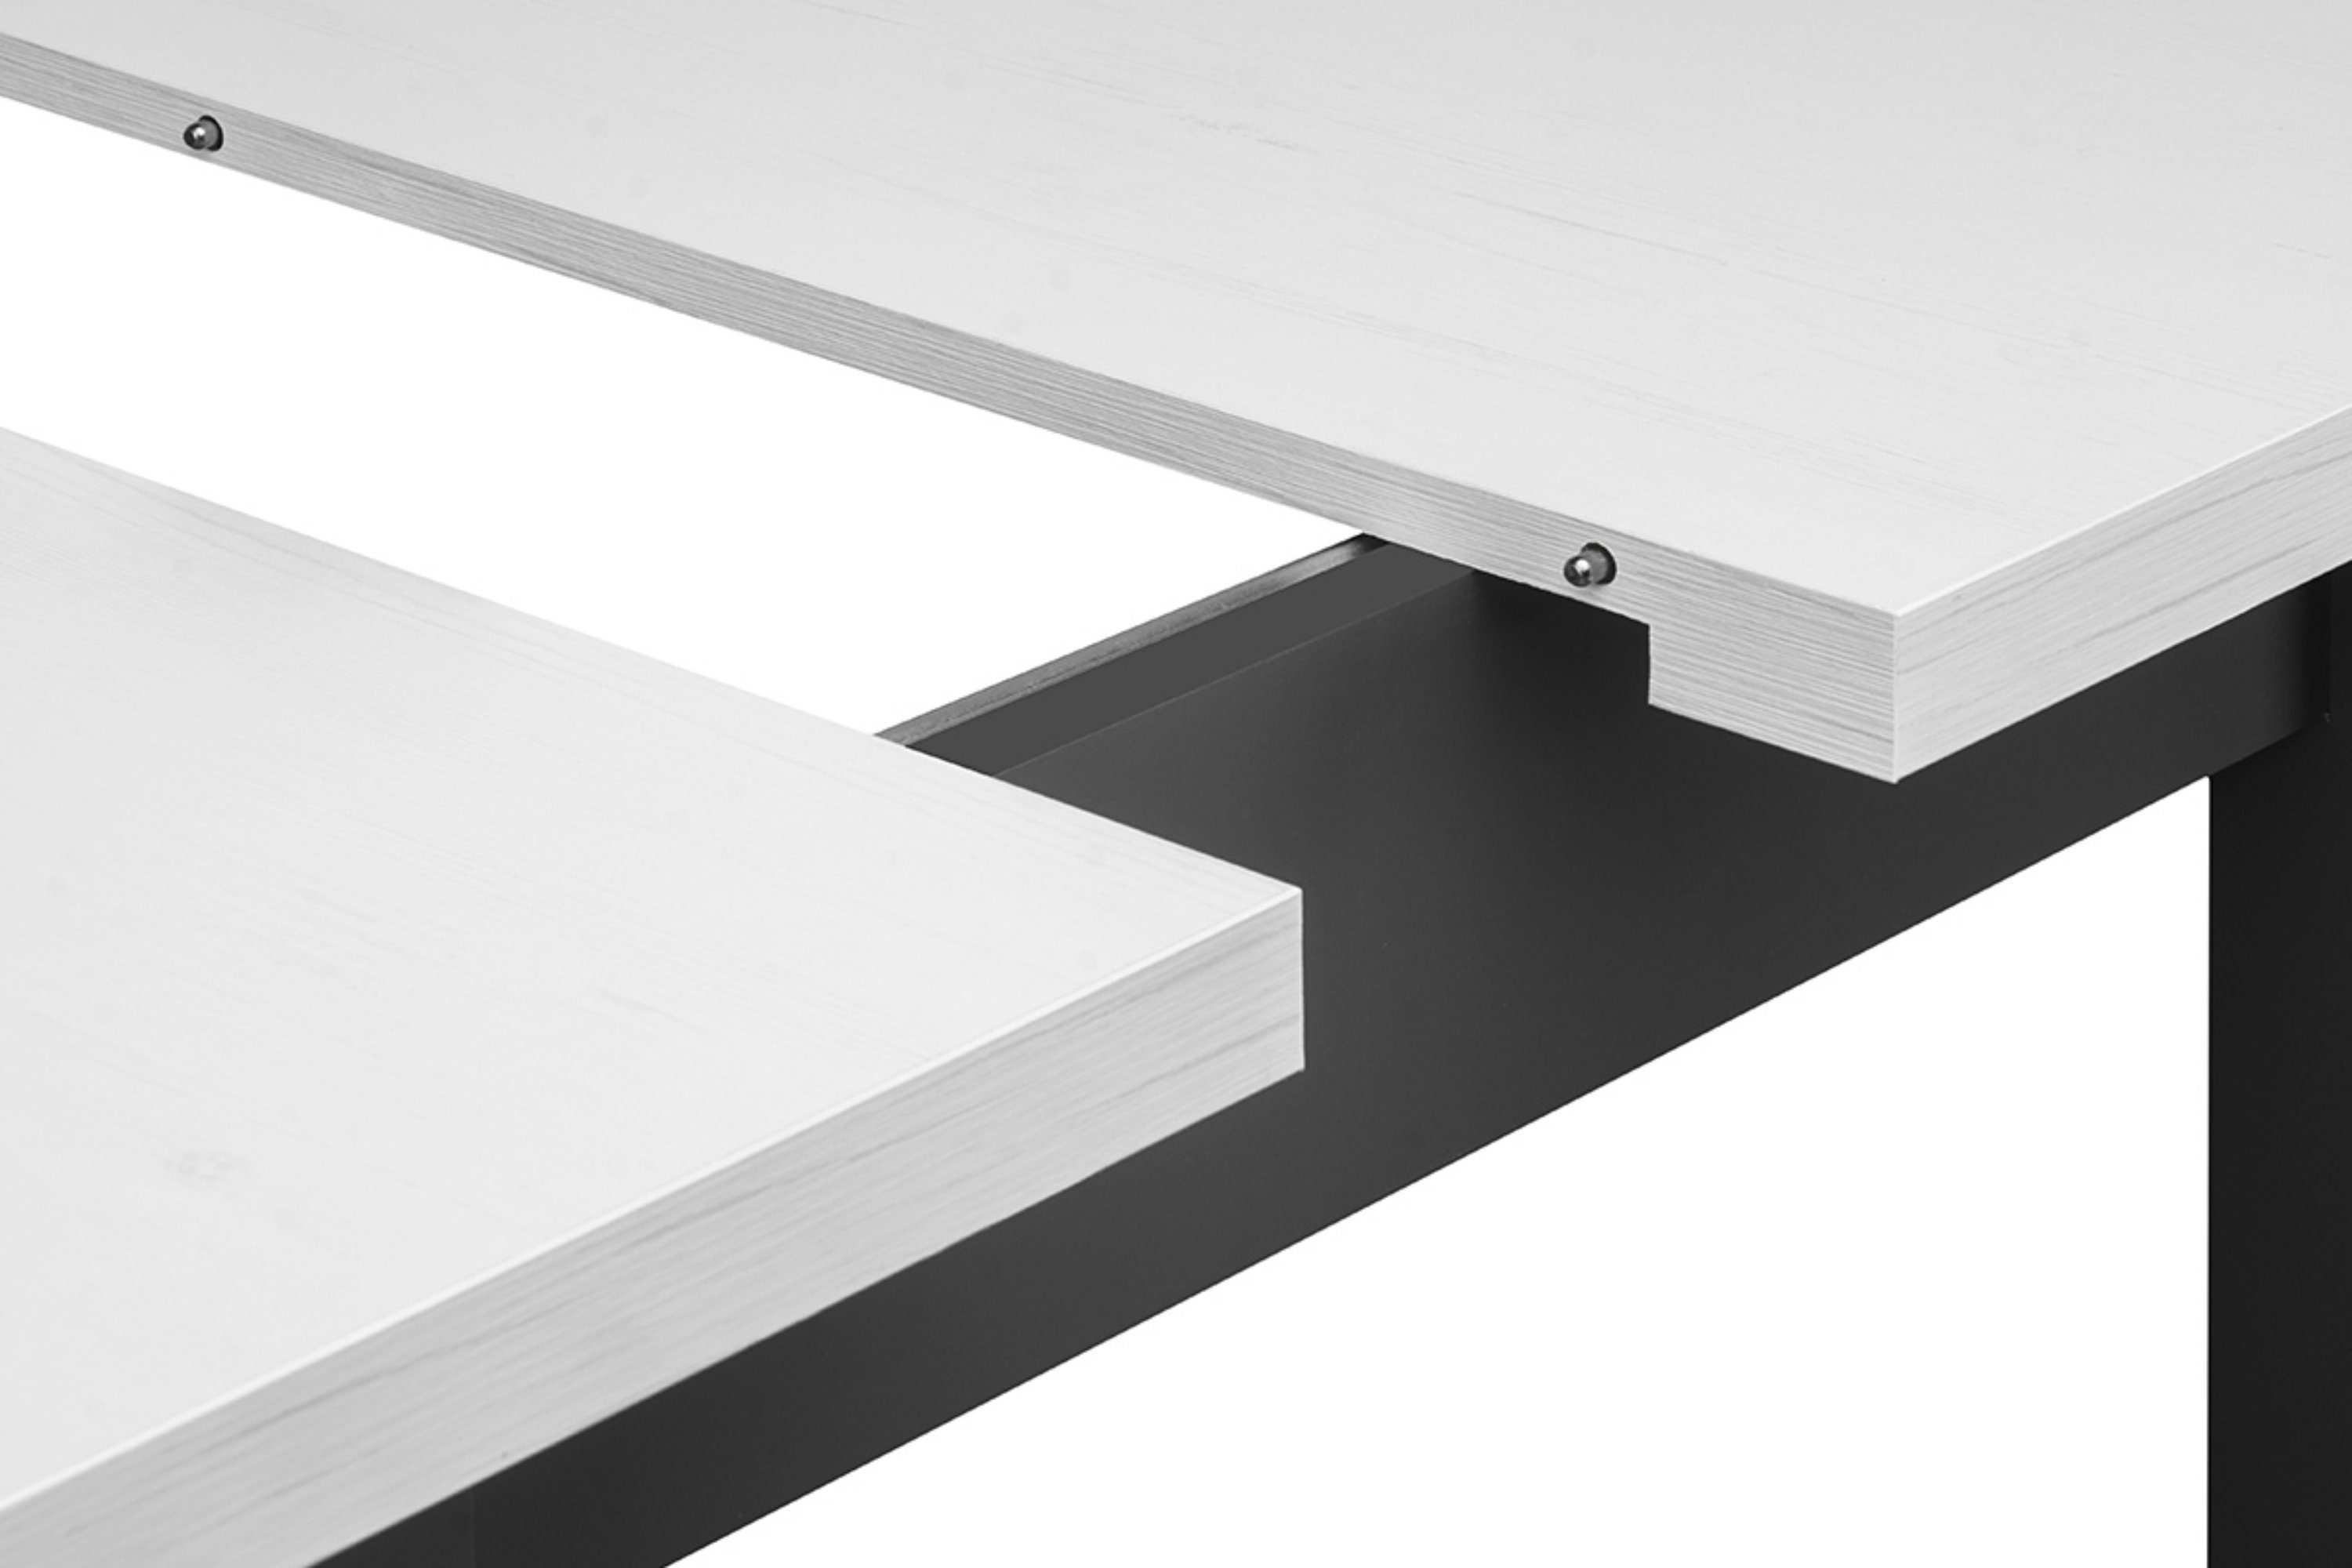 SALUTO Konsimo bis grau | weiß 80x80cm, grau Küchentisch weiß 110cm, Esszimmertisch / quadratisch Esstisch | ausziehbar